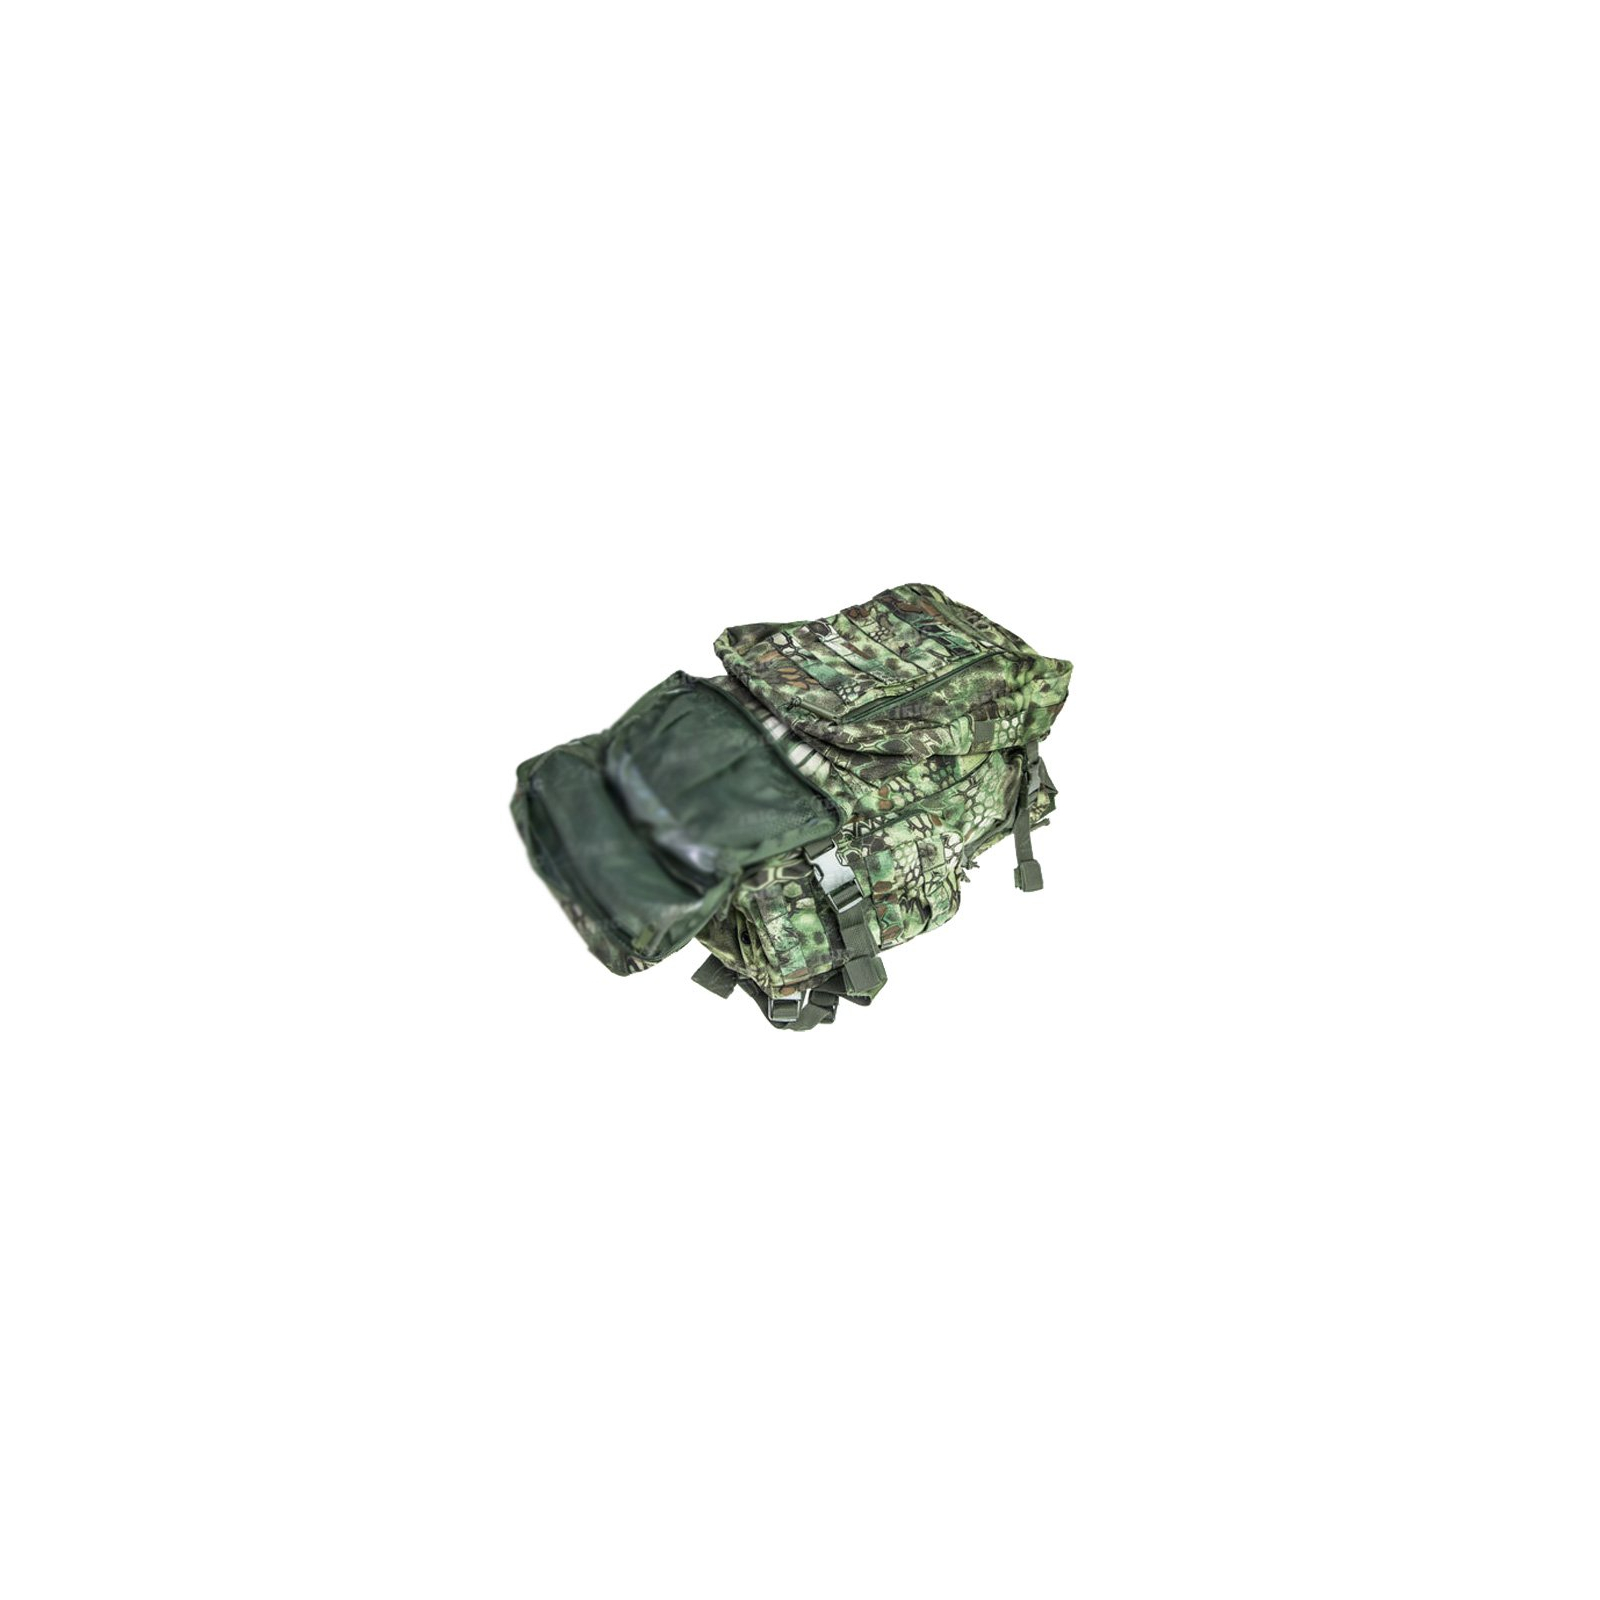 Рюкзак туристический Skif Tac тактический 3-х дневный 45 литров kryptek green (2795.02.55) изображение 4